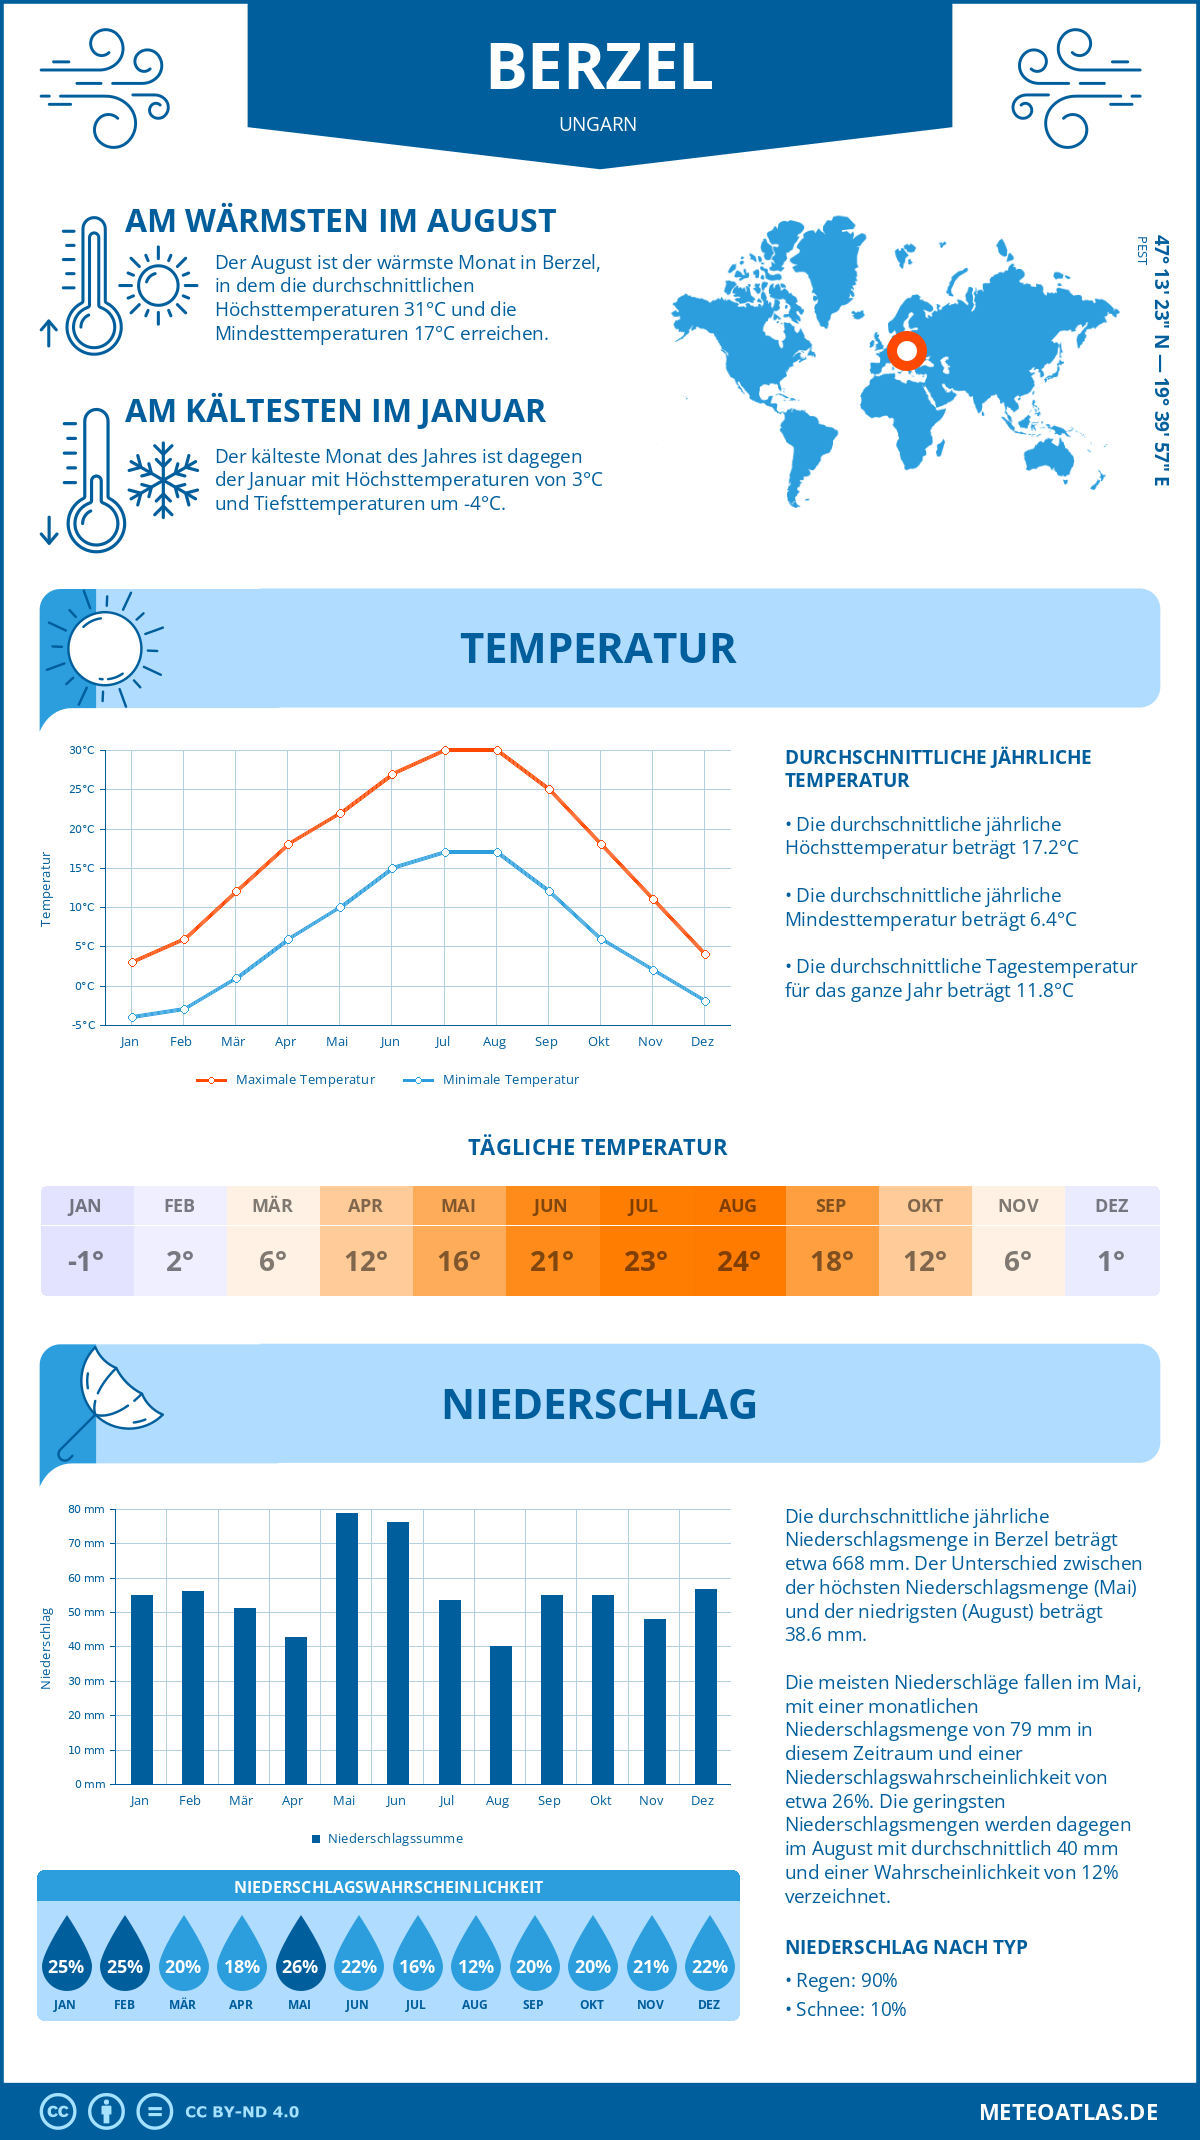 Wetter Berzel (Ungarn) - Temperatur und Niederschlag